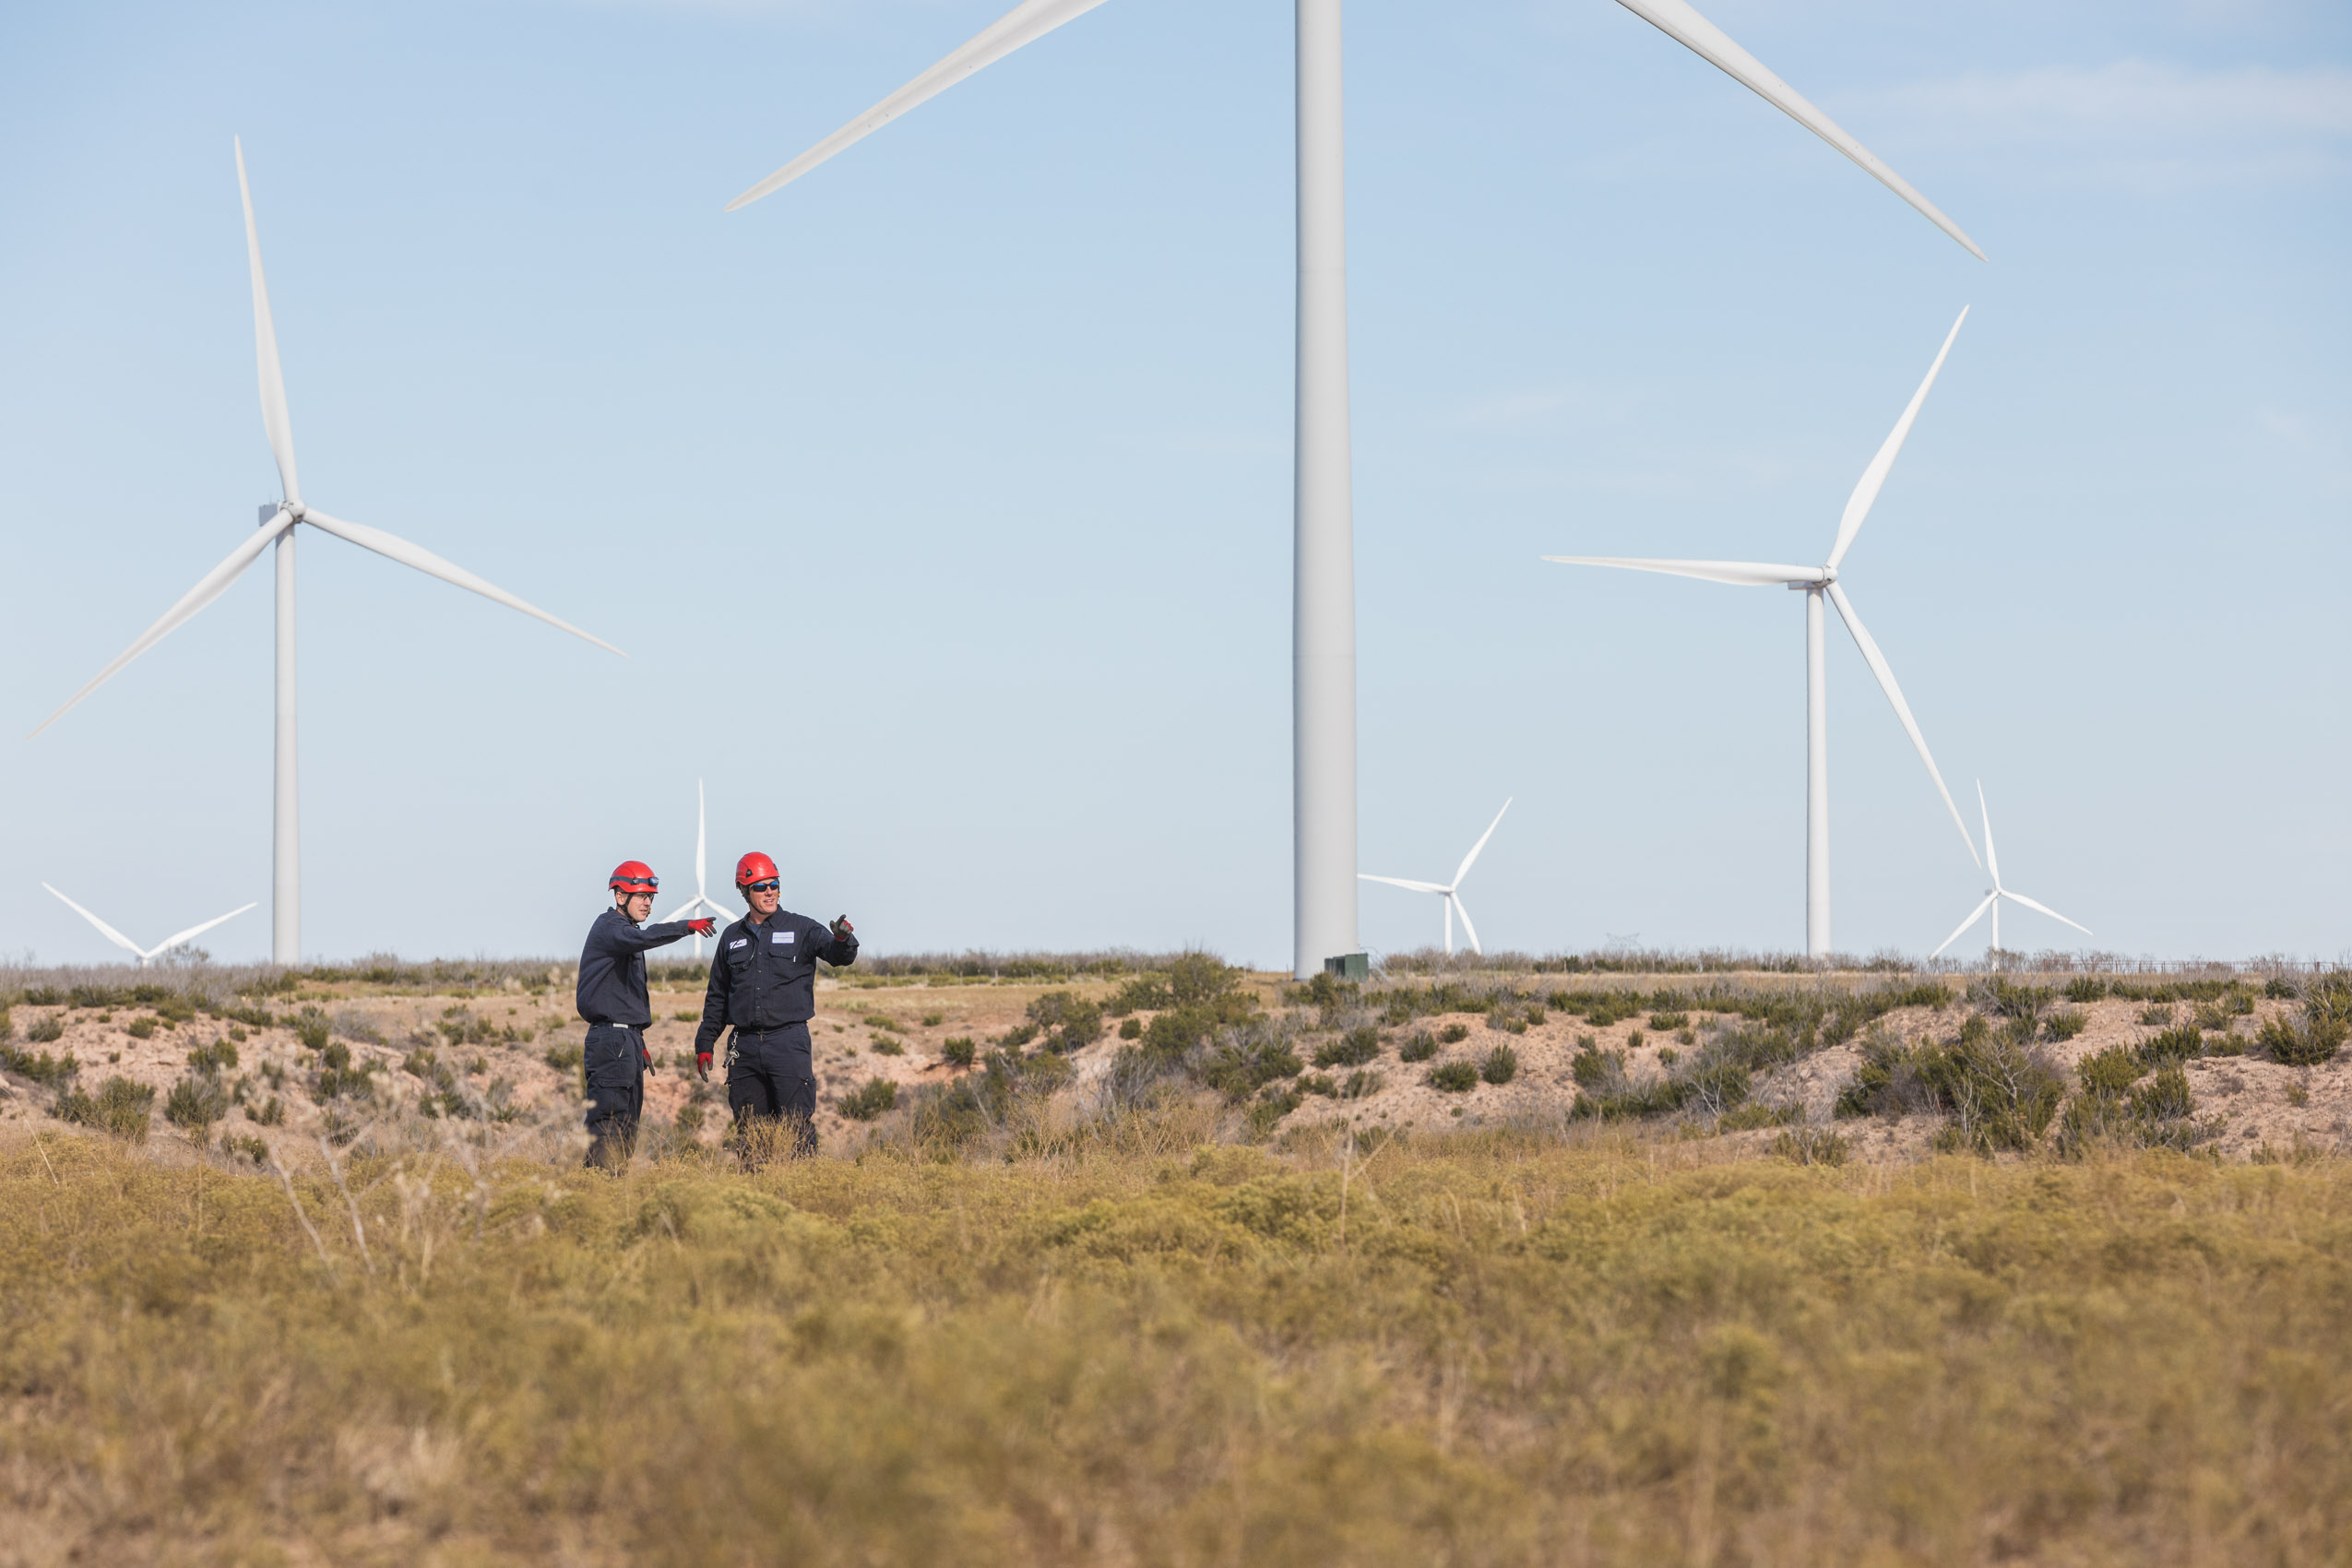 Wind turbine technicians on clean renewable energy wind farm.